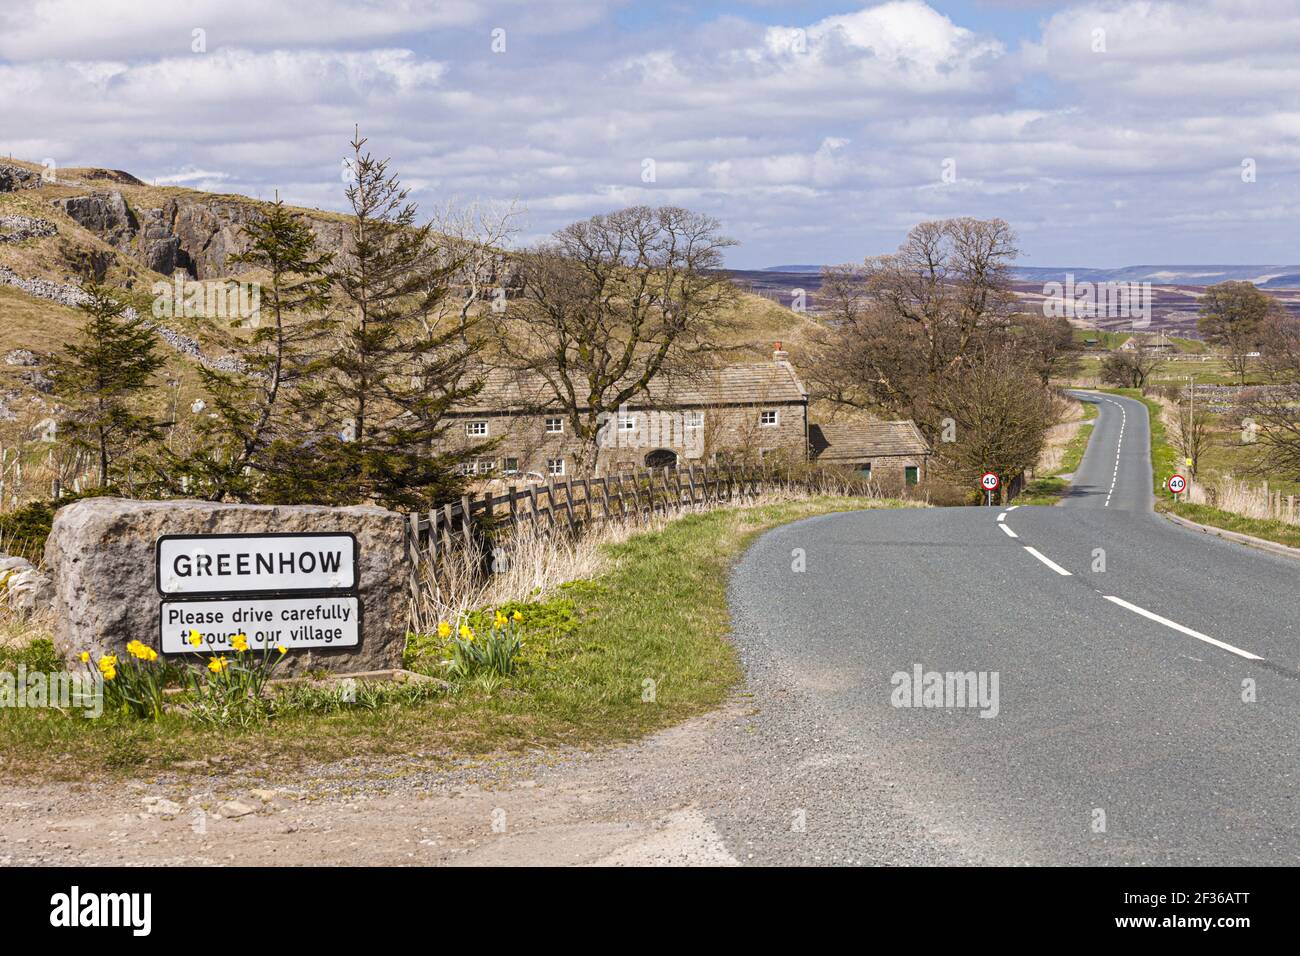 El pueblo de las tierras altas de Greenhow, North Yorkshire Reino Unido - uno de los pueblos más altos de Yorkshire y uno de los pocos pueblos en el Reino Unido por encima de 400 metros Foto de stock